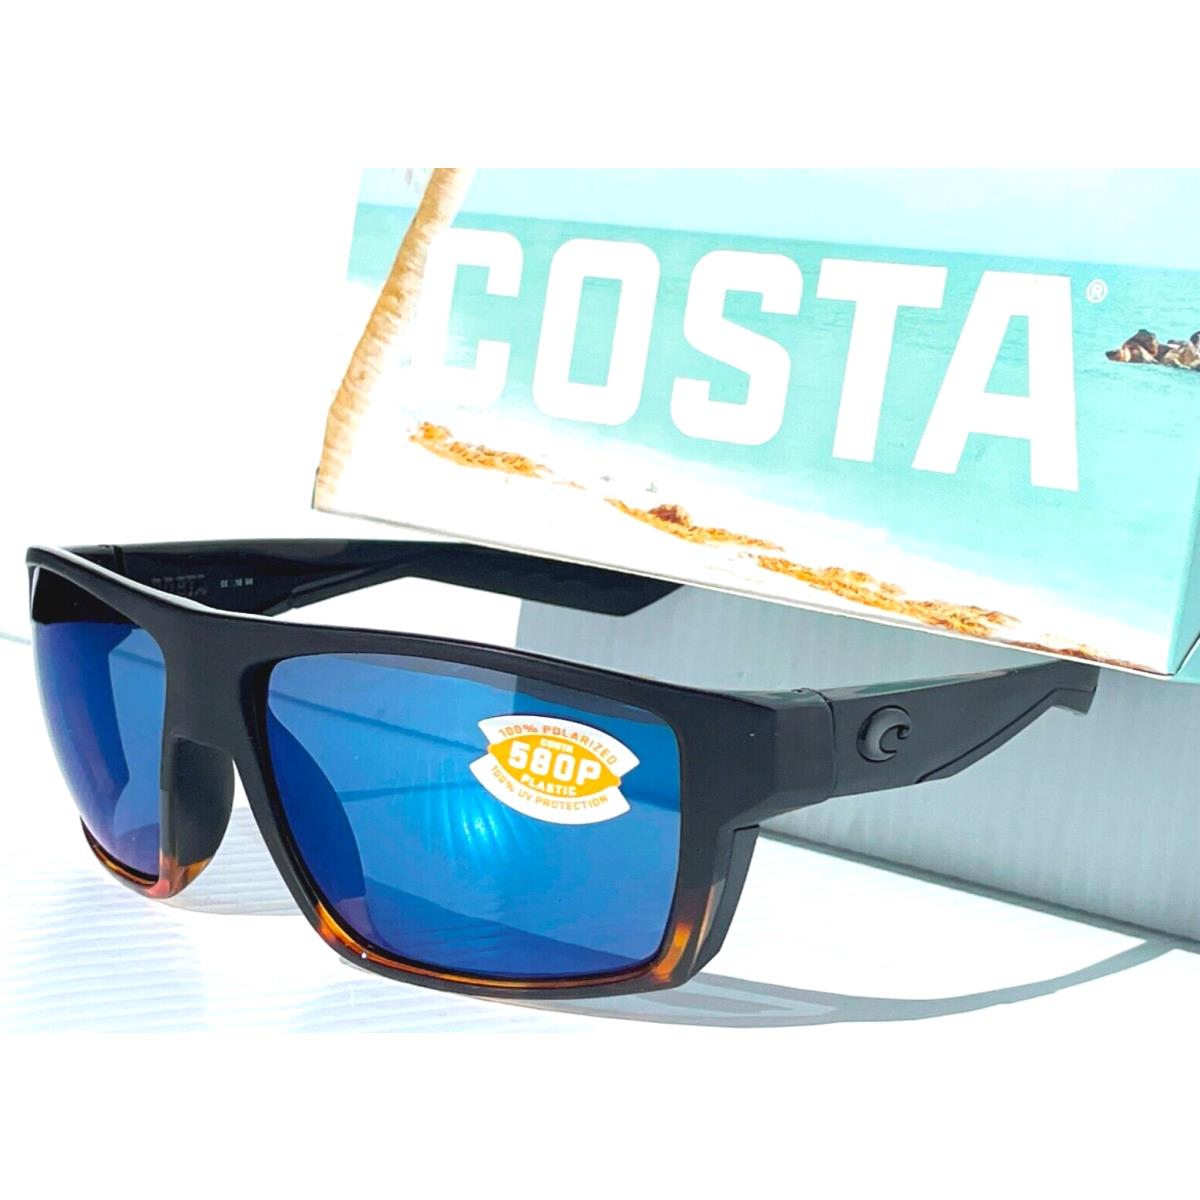 Costa Del Mar sunglasses Bloke - Frame: Black & Tortoise, Lens: Blue 1